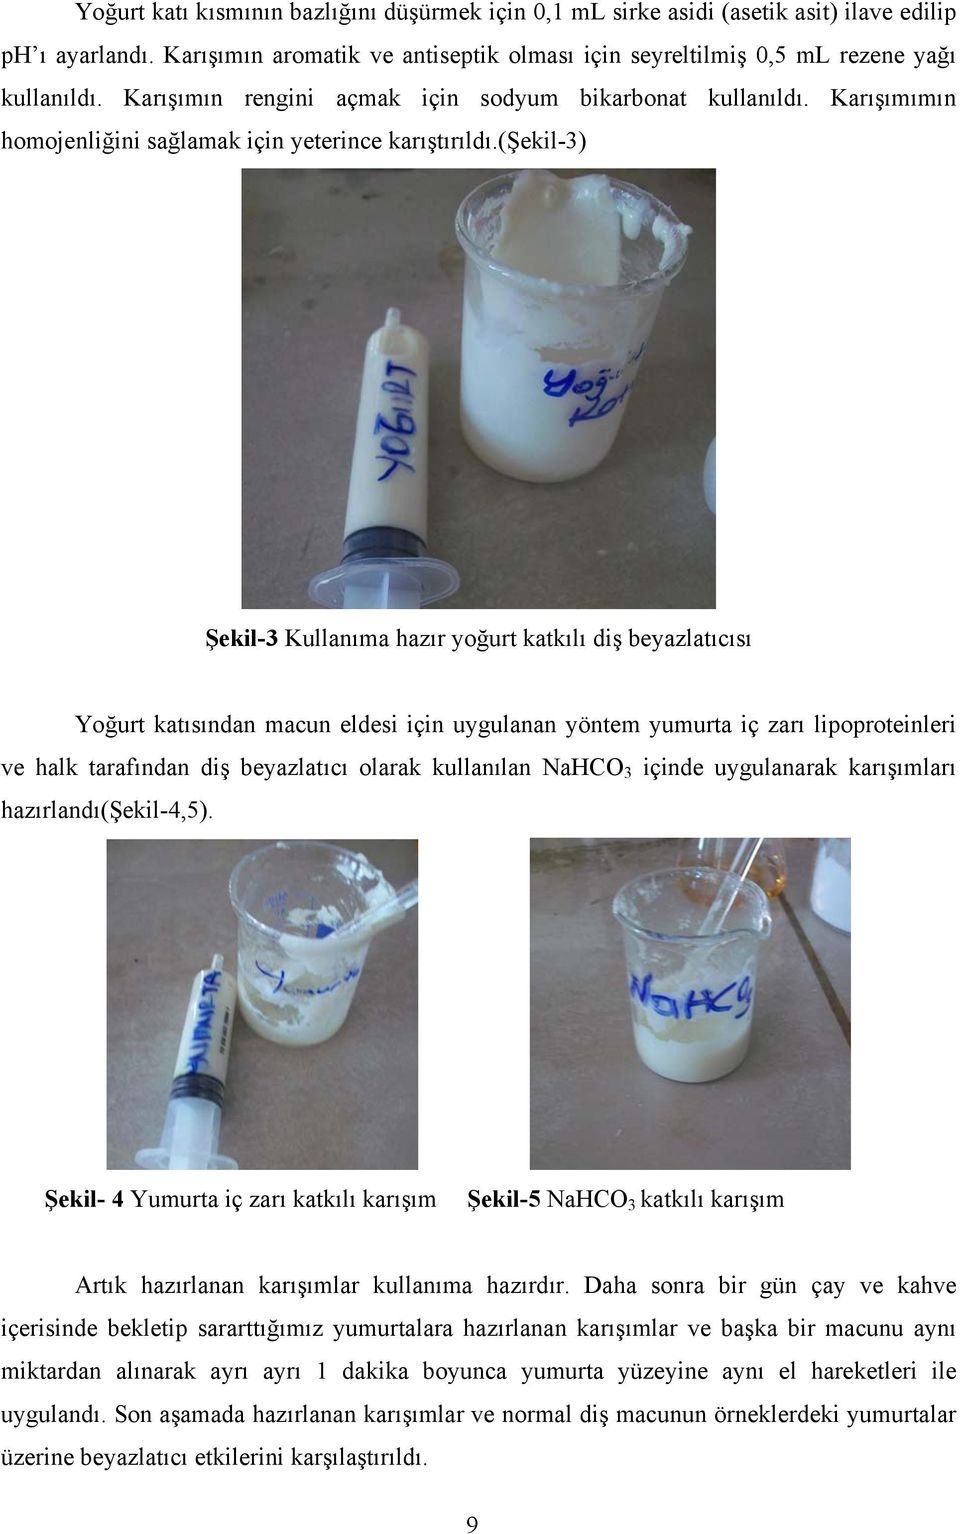 (şekil-3) Şekil-3 Kullanıma hazır yoğurt katkılı diş beyazlatıcısı Yoğurt katısından macun eldesi için uygulanan yöntem yumurta iç zarı lipoproteinleri ve halk tarafından diş beyazlatıcı olarak